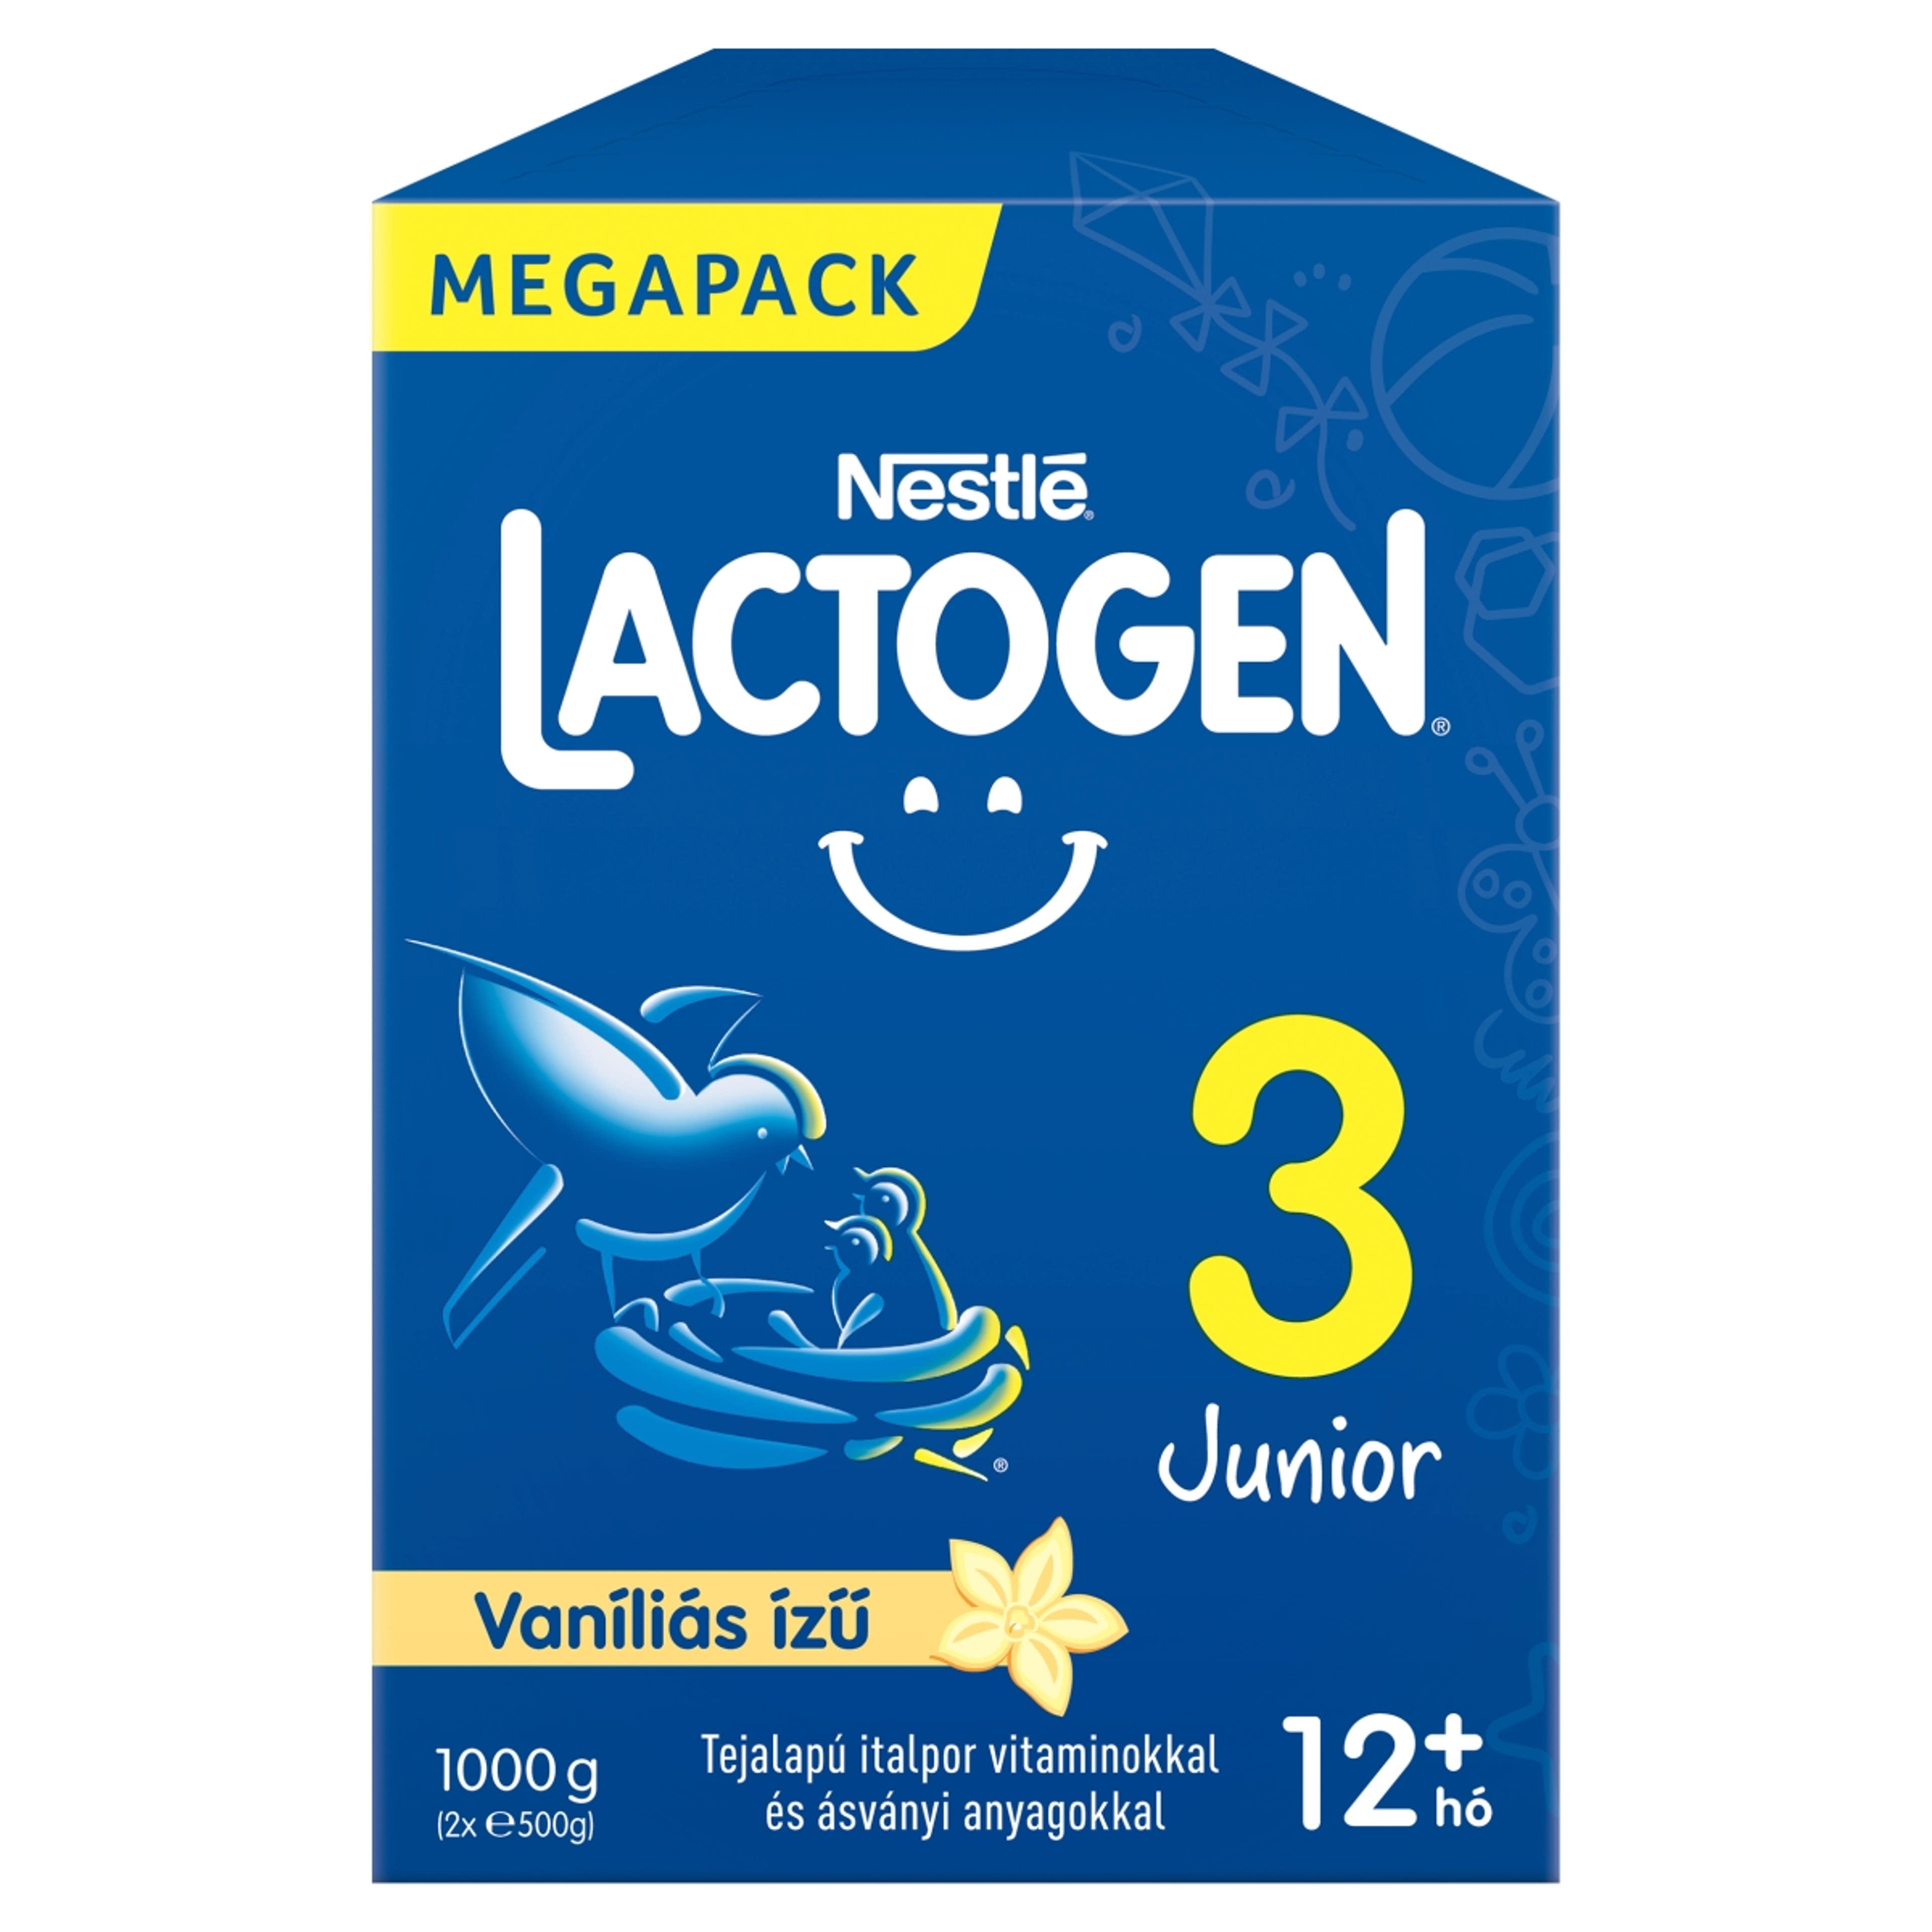 Nestlé Lactogen 3 Junior vaníliás ízű tejalapú italpor, 12 hónapos kortól - 1000 g